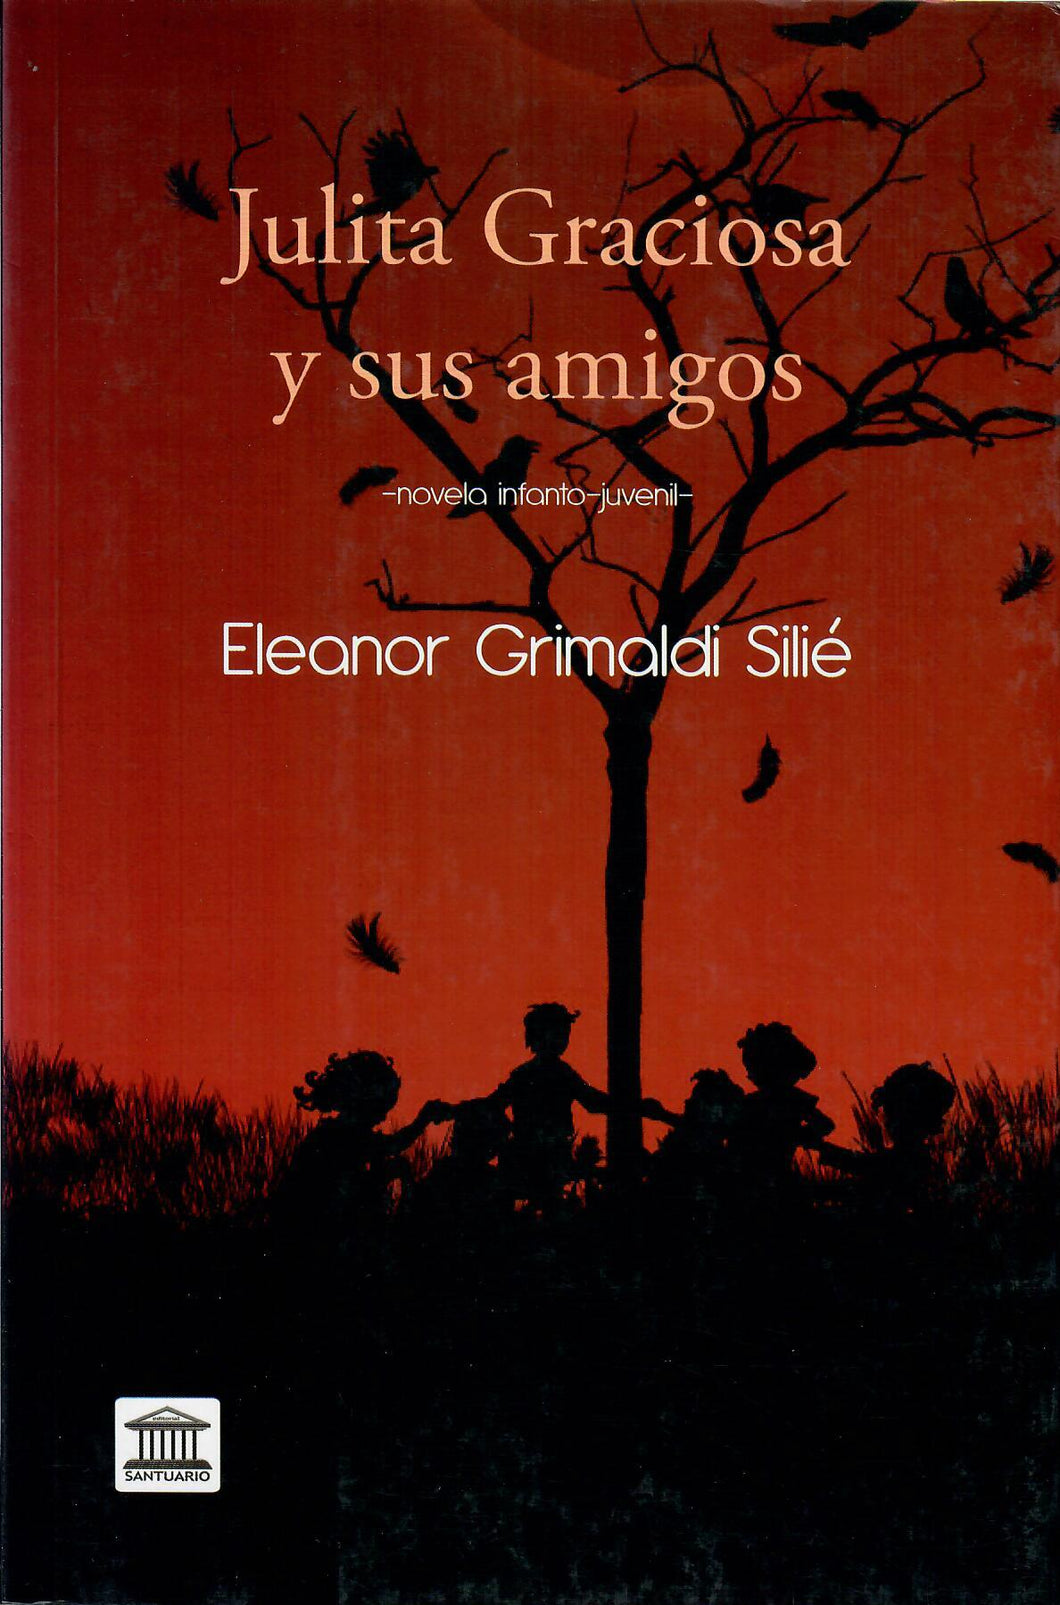 JULITA GRACIOSA Y SUS AMIGOS - Eleanor Grimaldi Silié